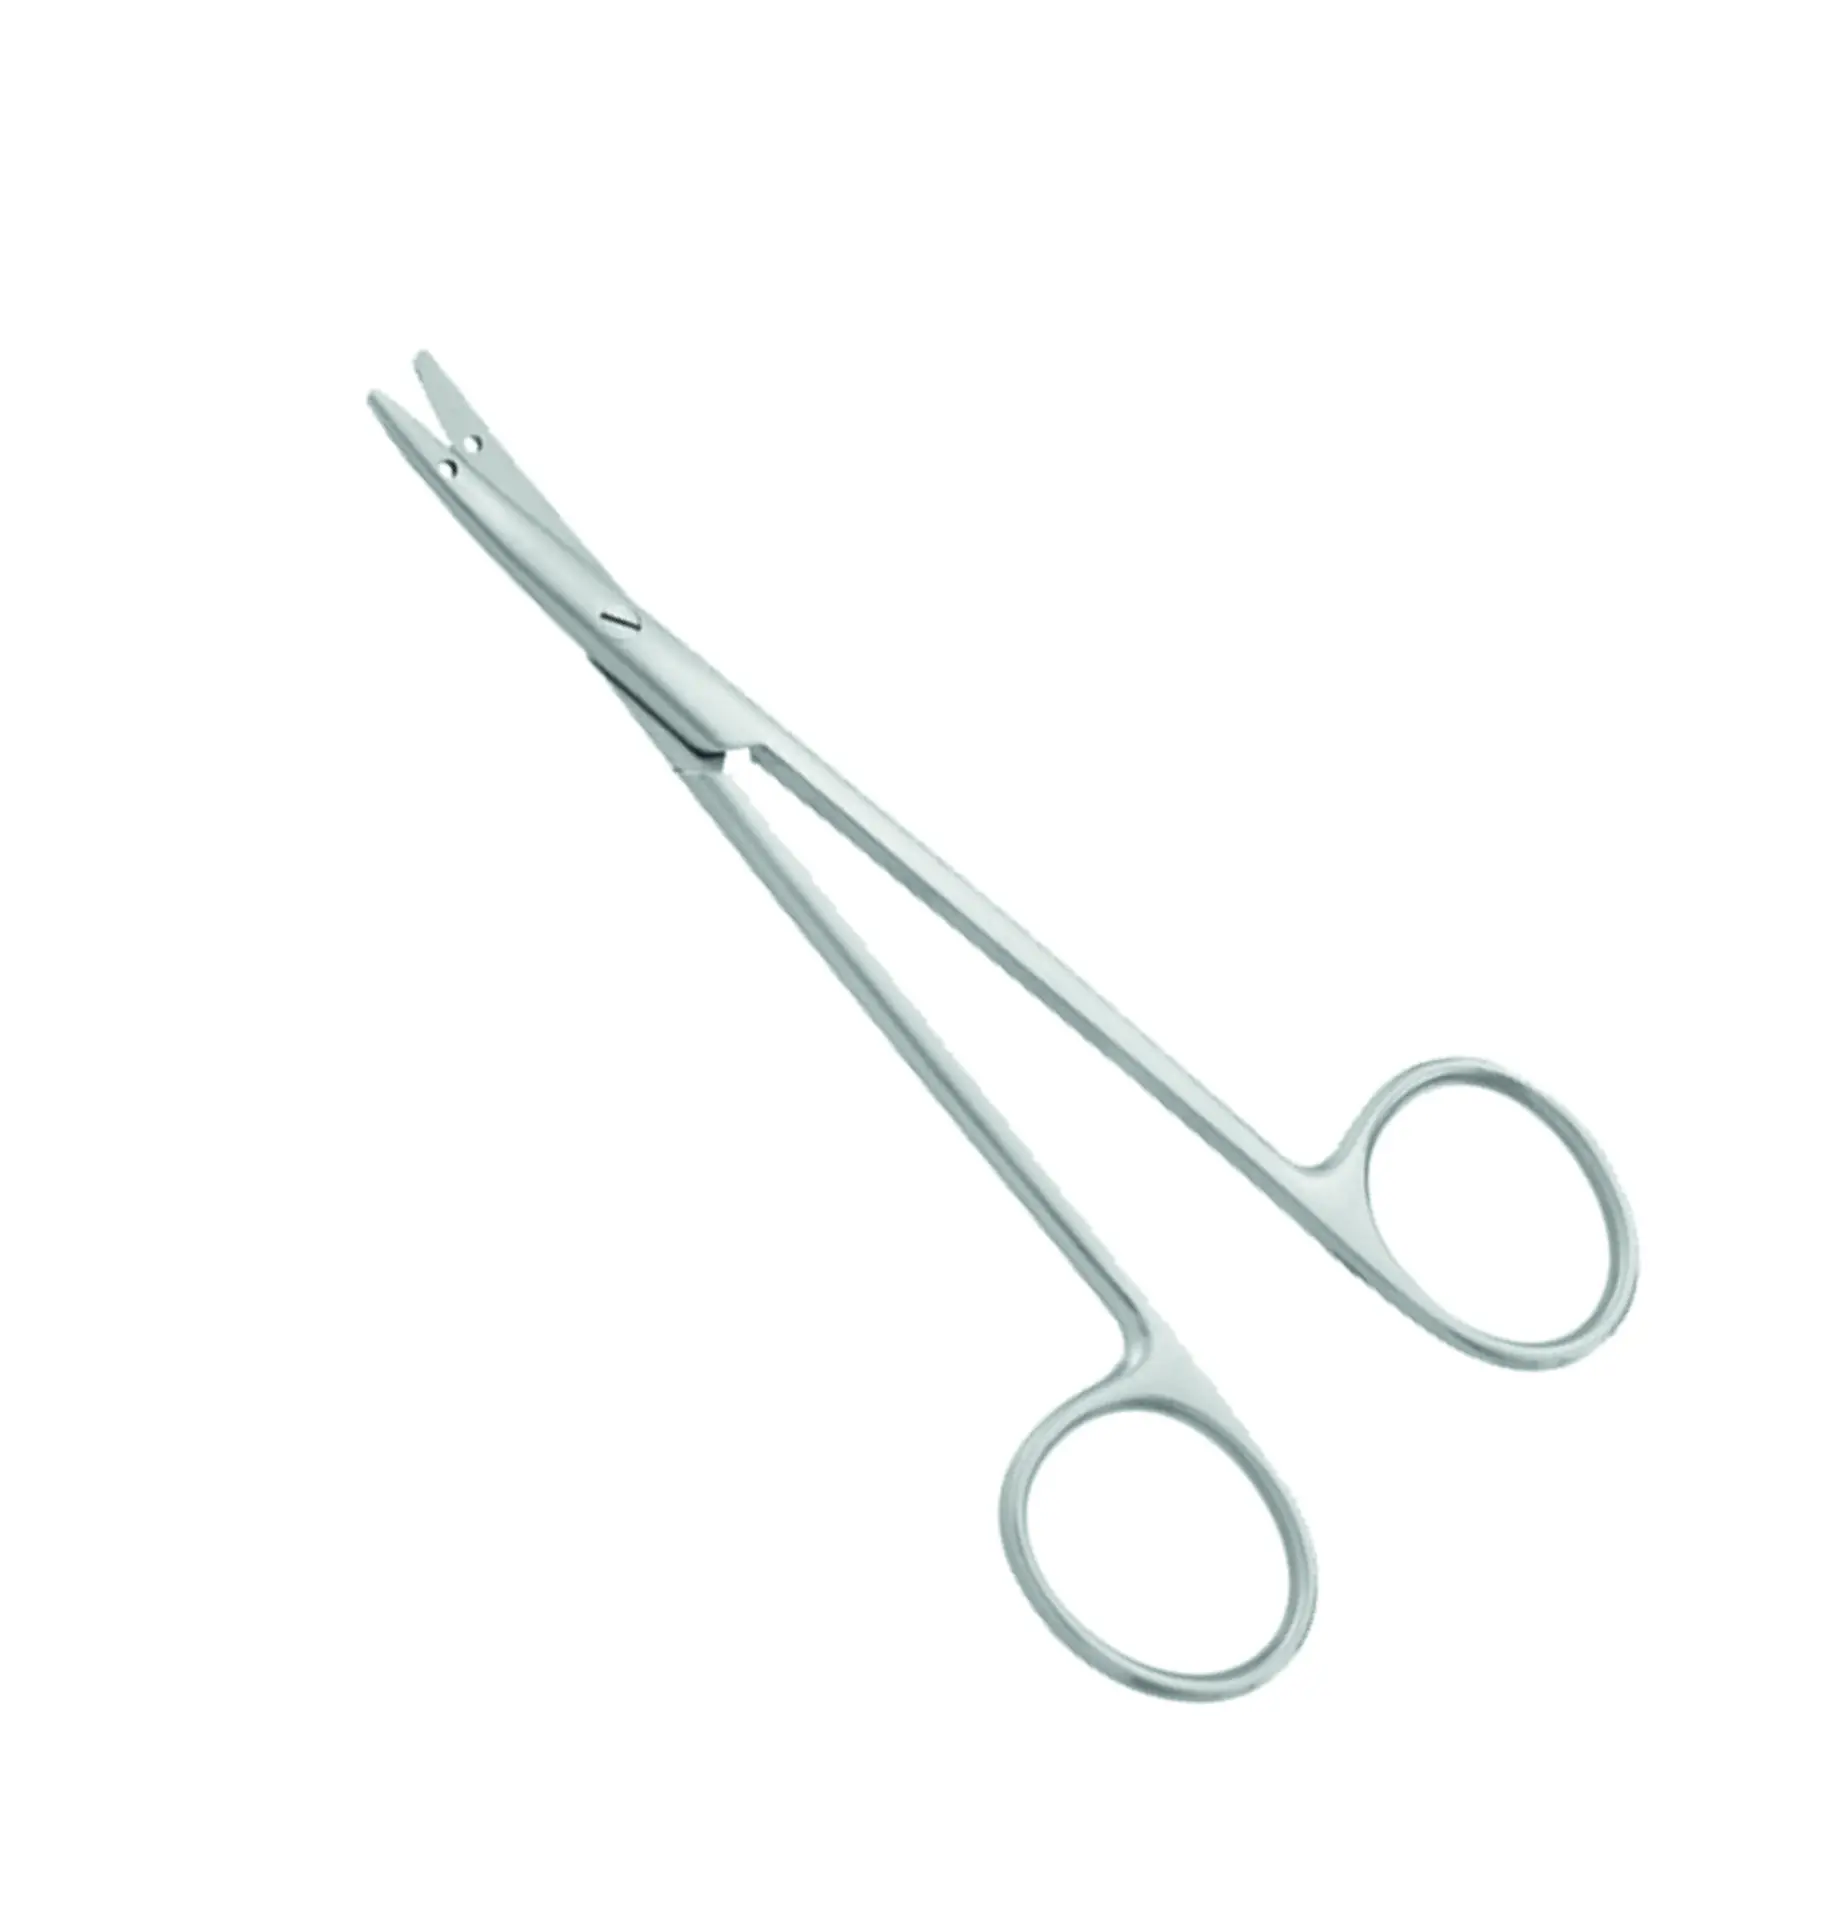 Littler Suture Scissors - Plastic Surgery Scissors